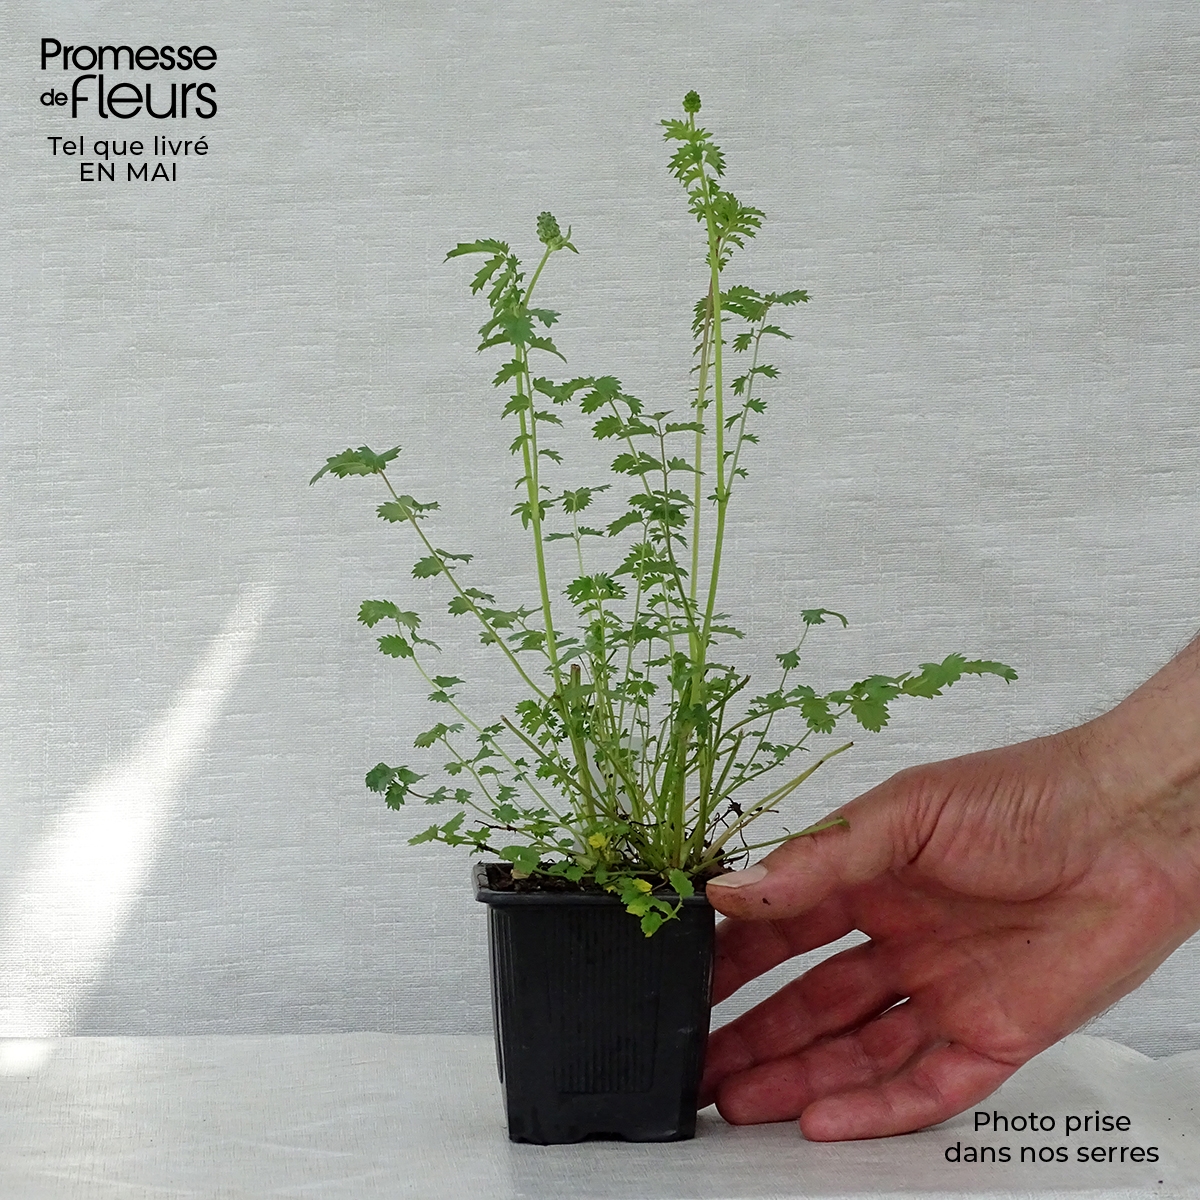 Petite pimprenelle - Sanguisorba minor en plant